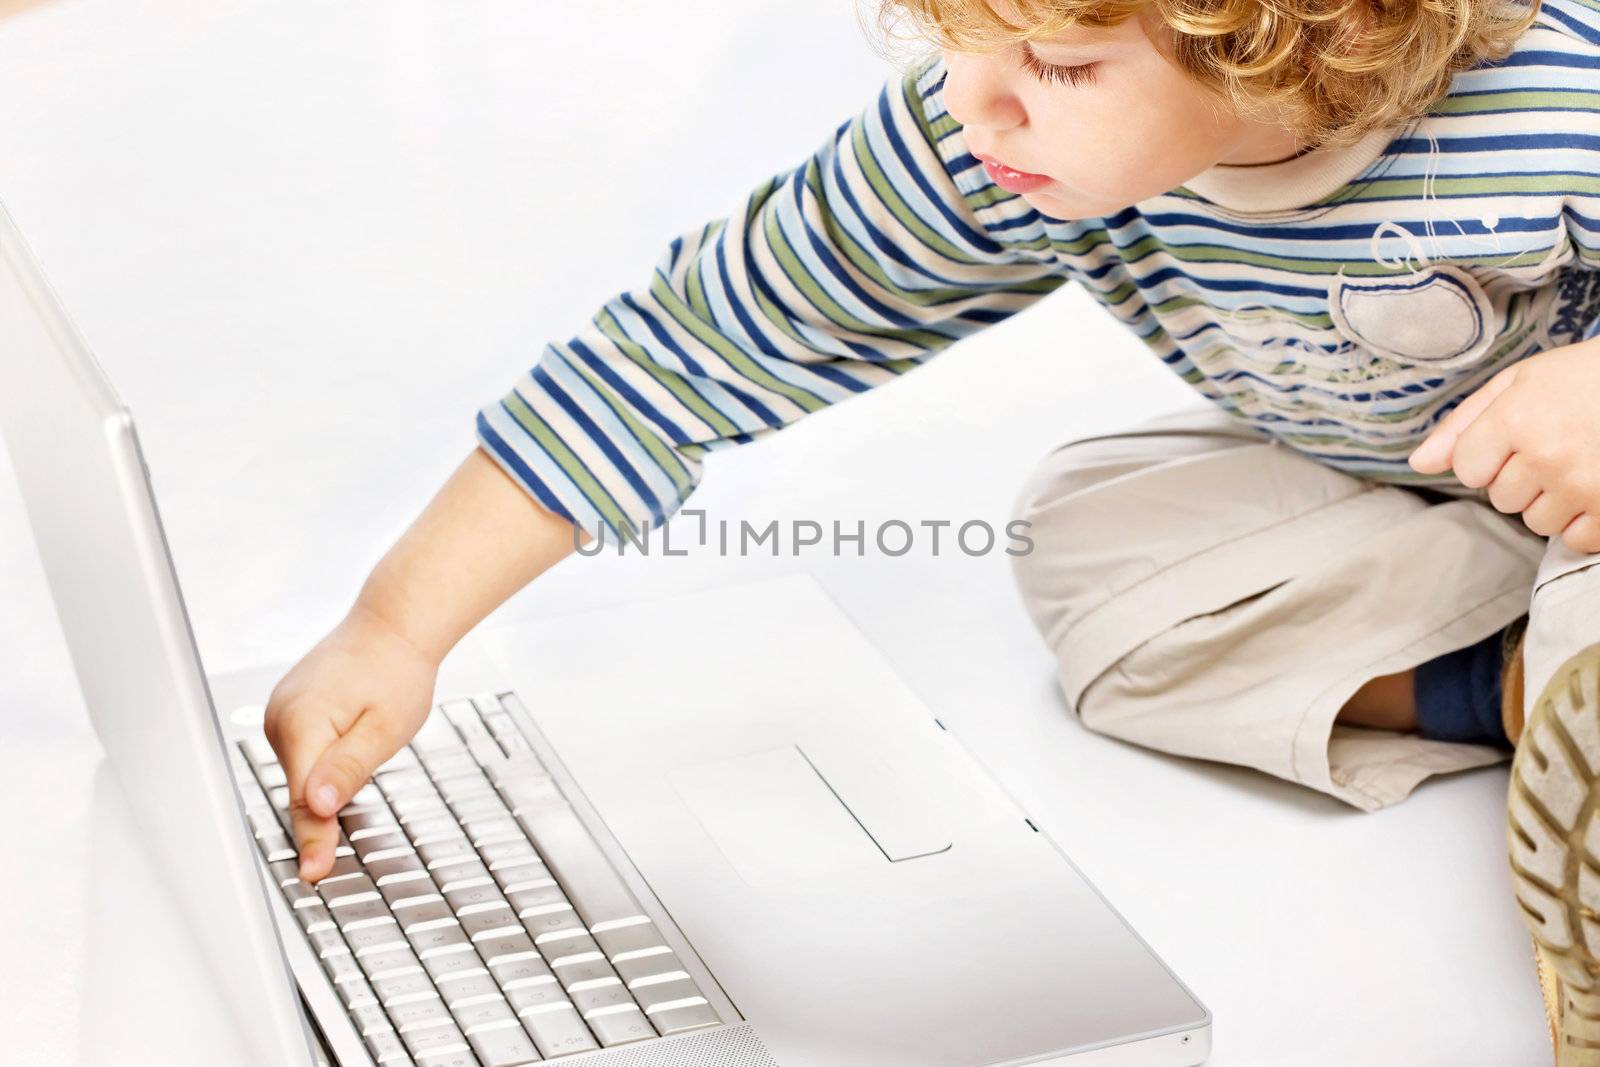 Blue hair boy exploring computer